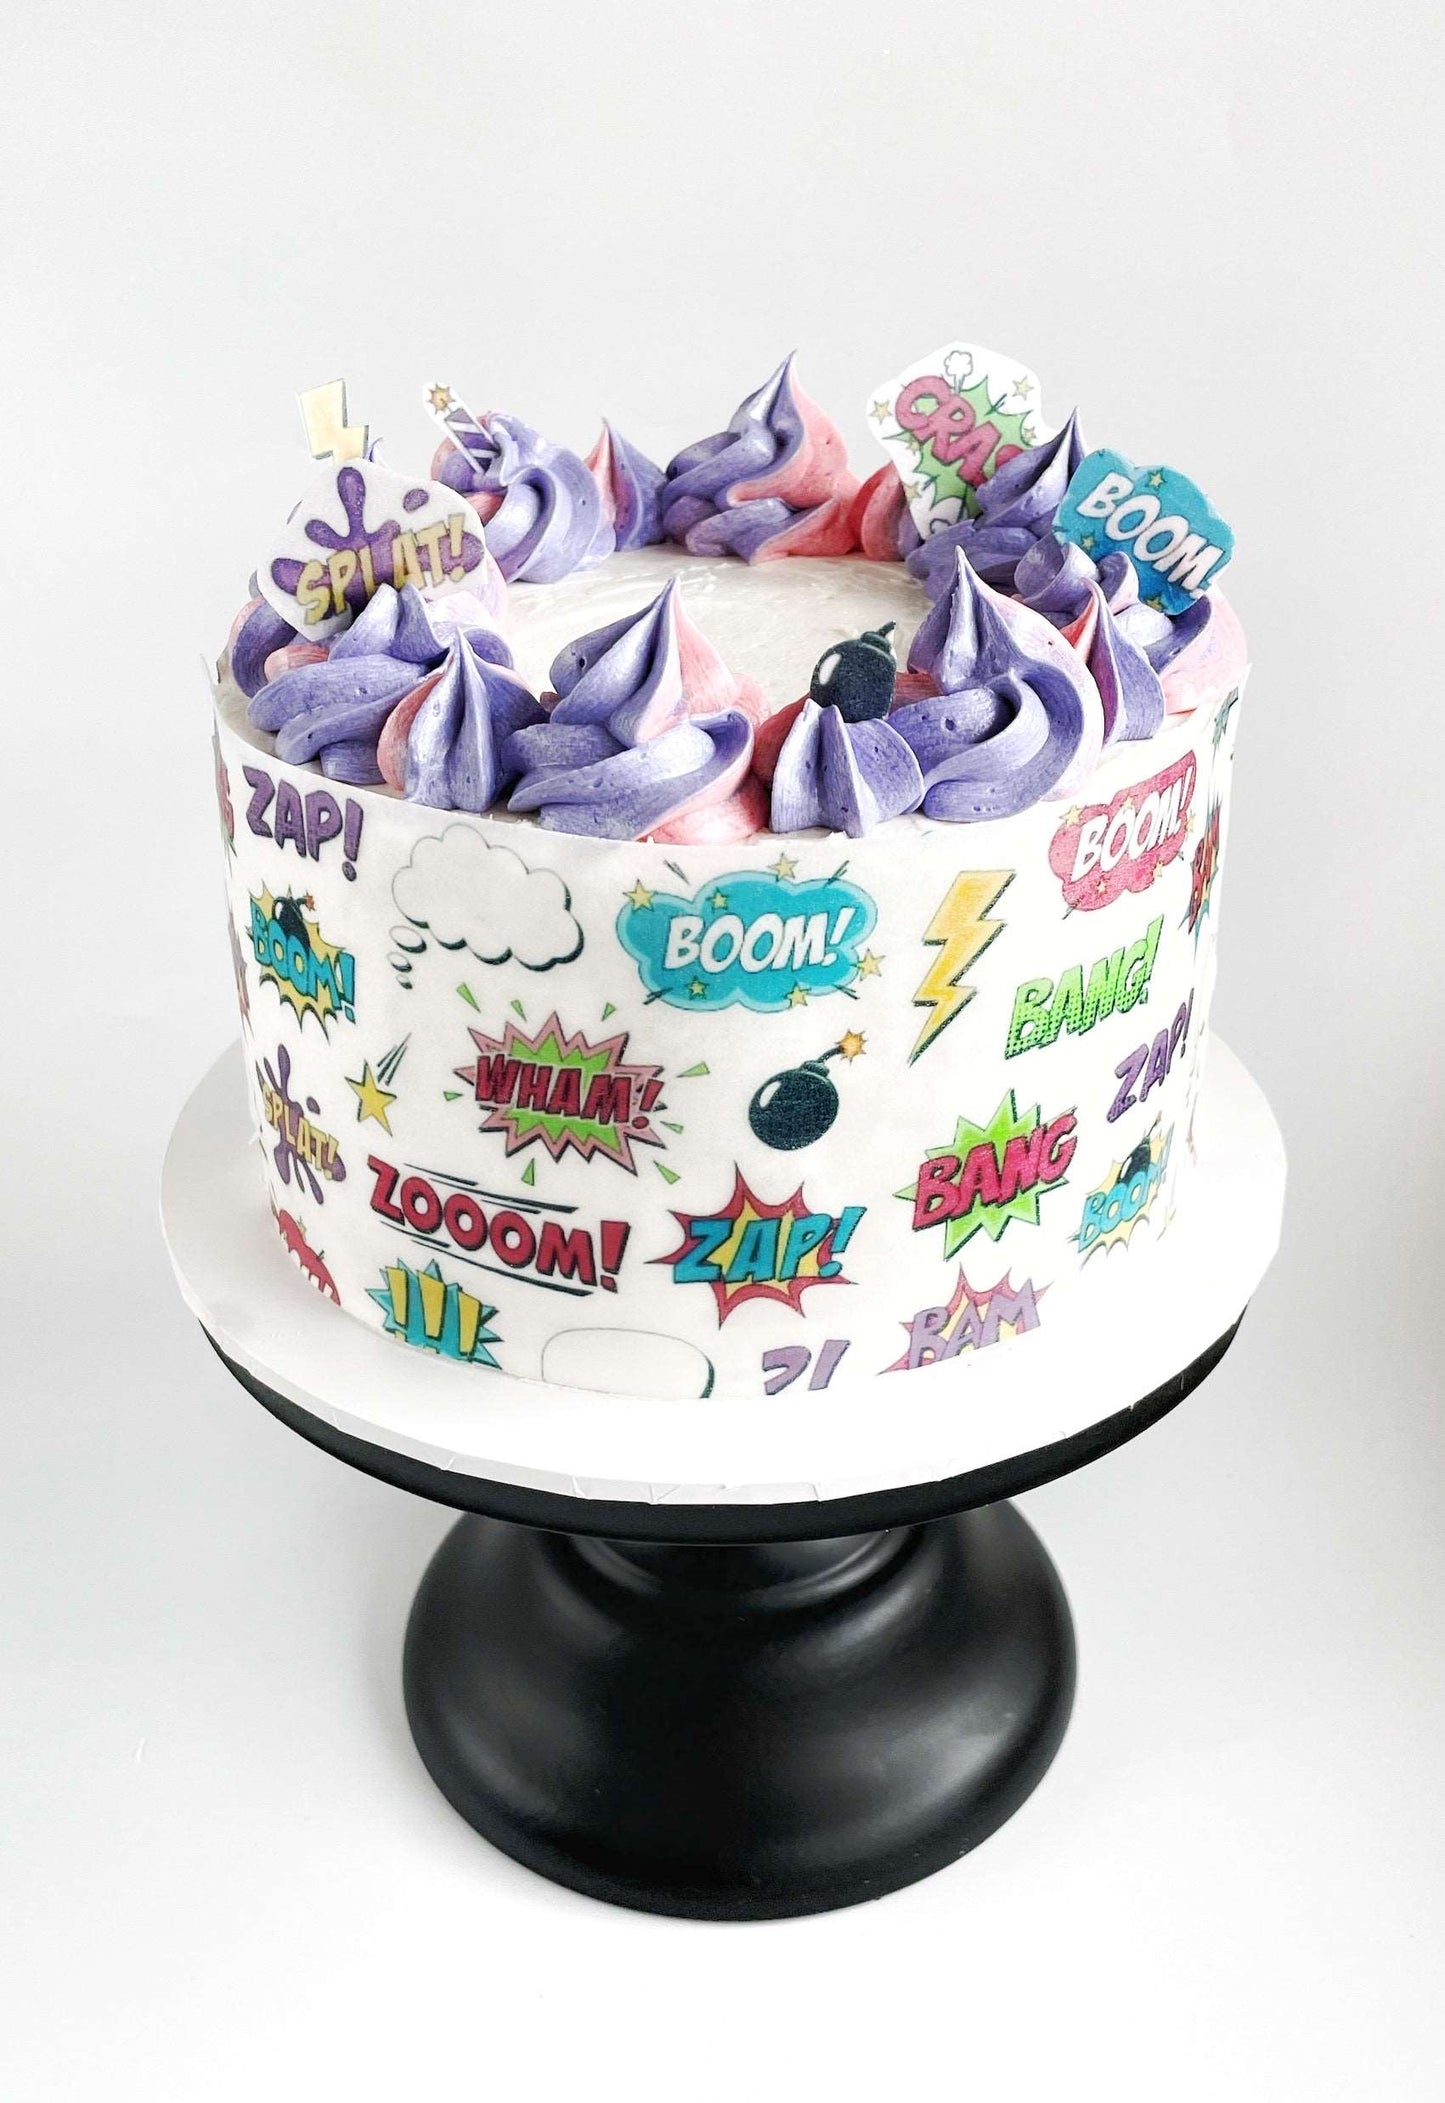 Girl Power Cake Kit, Girly DIY Cake Kit, Superhero Girl Cake Kit, Girls Birthday Cake.